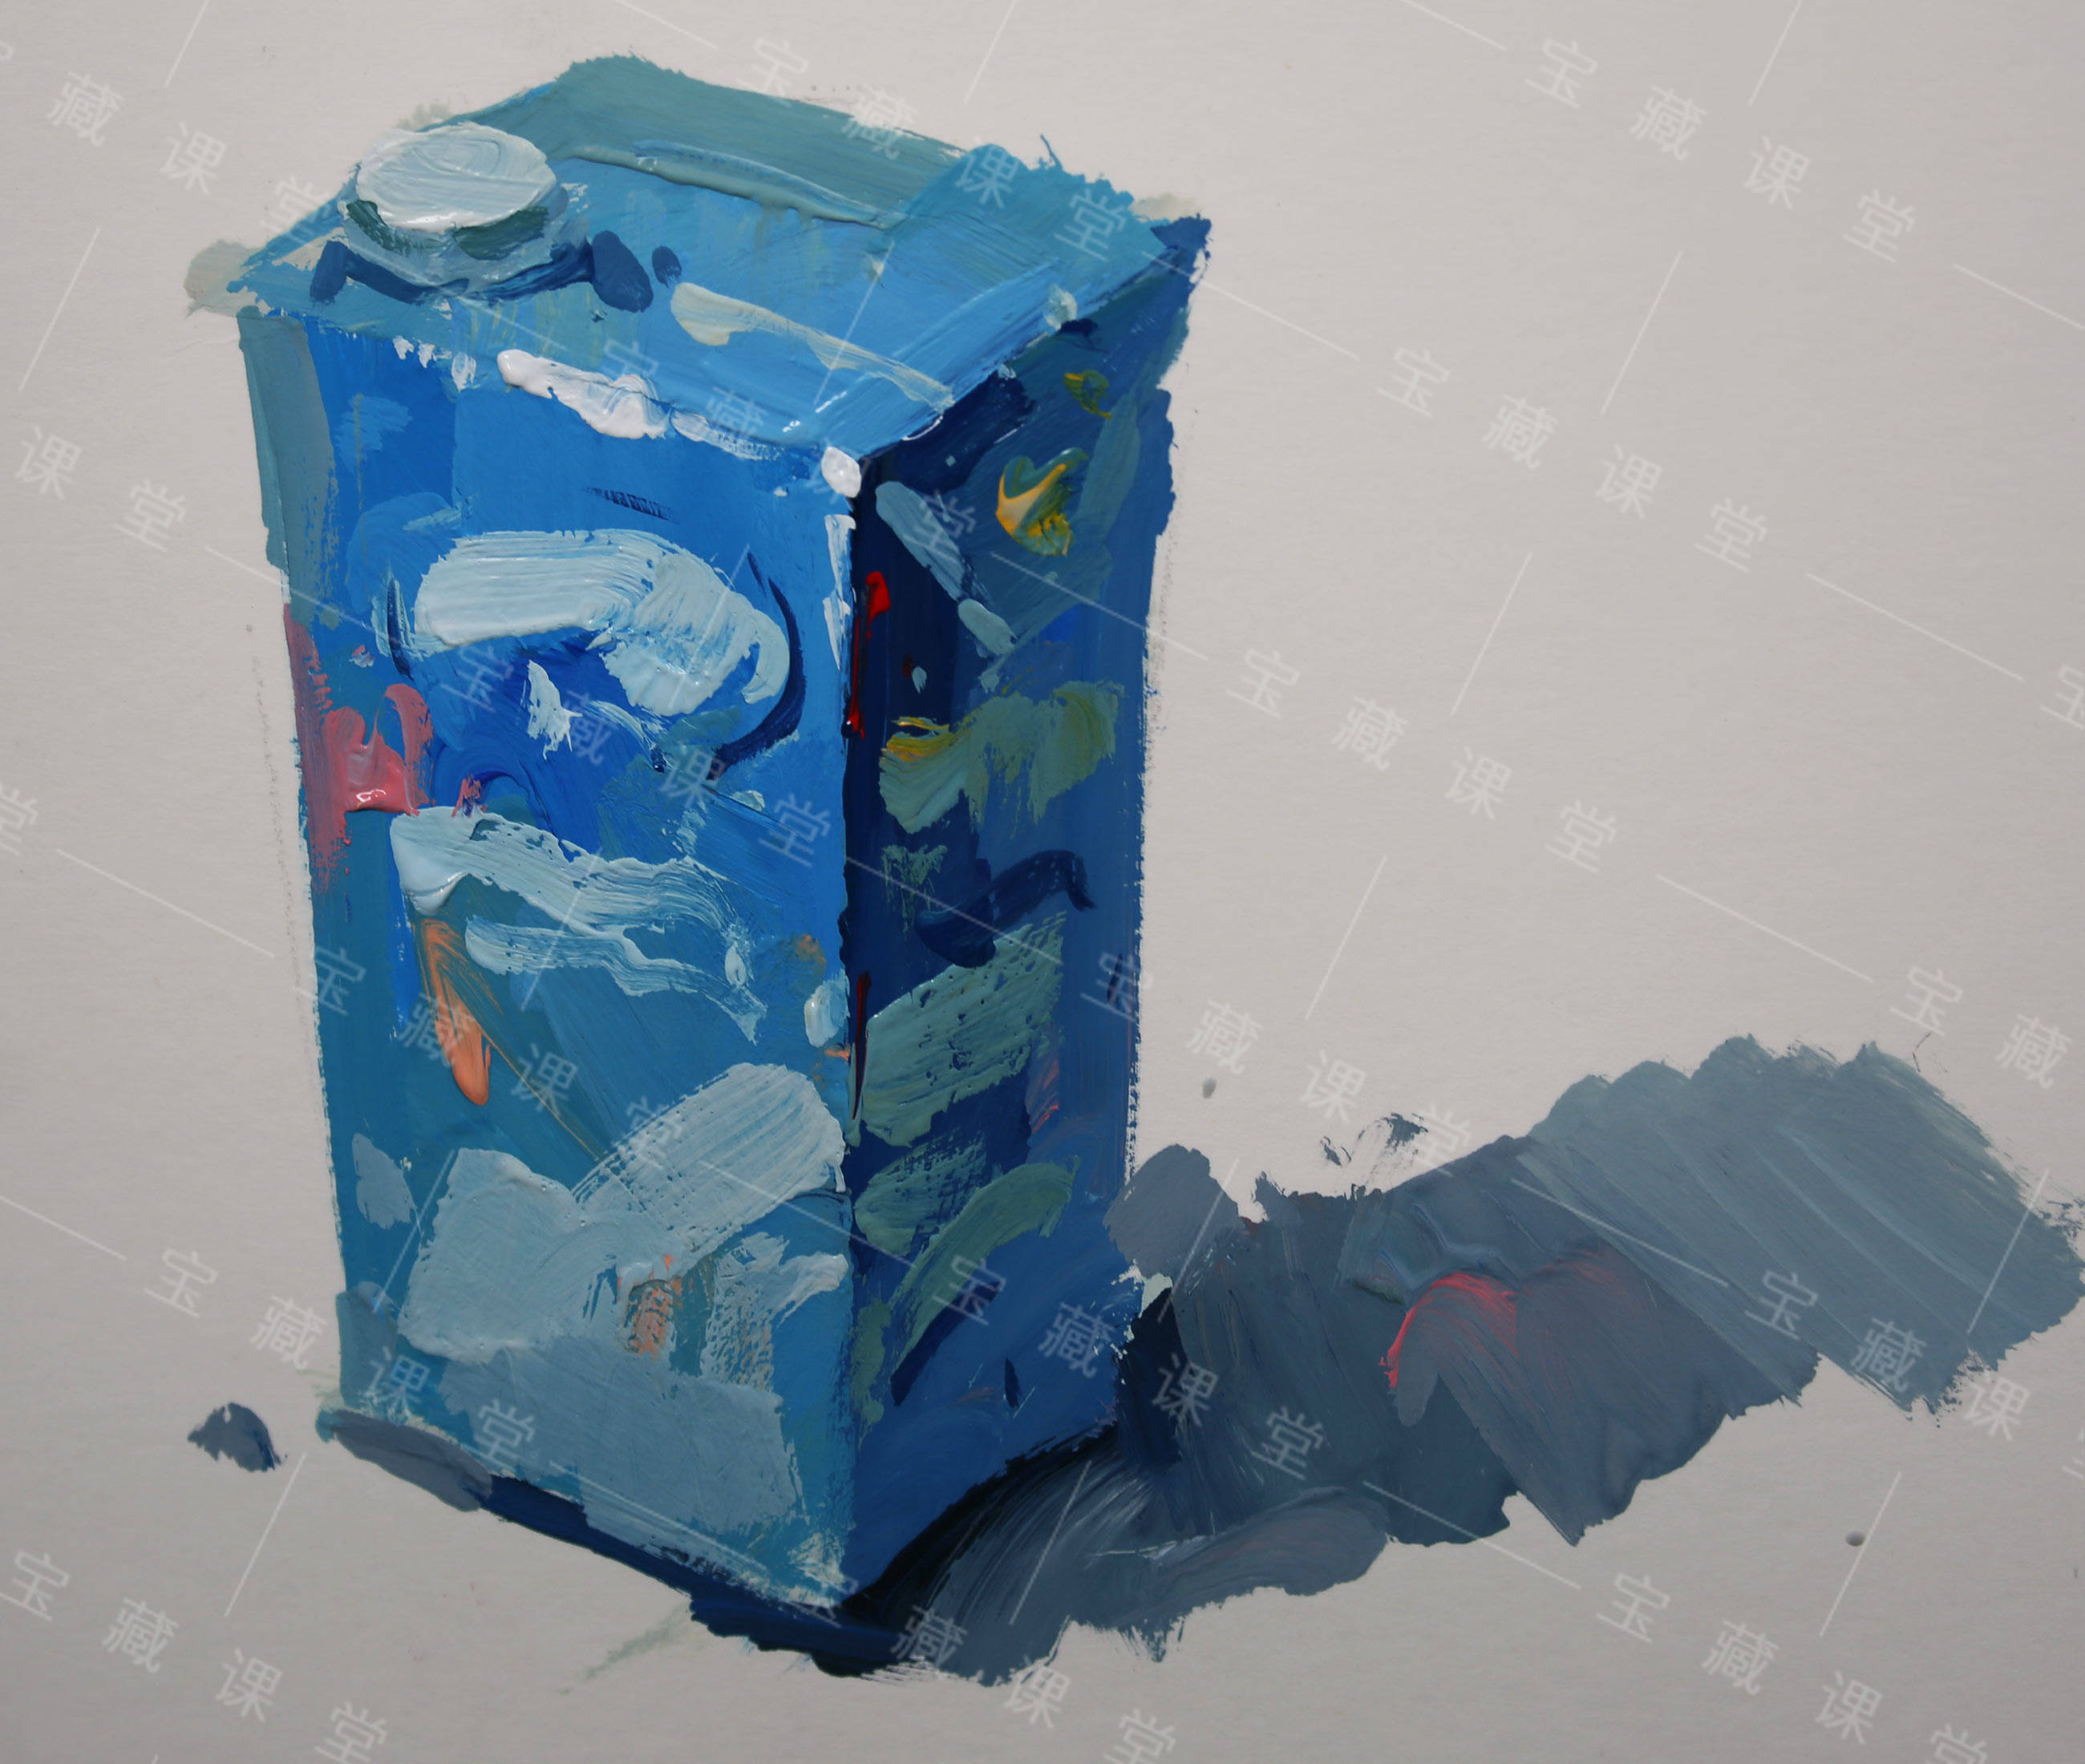 色彩单体静物——牛奶盒步骤图分享(附视频) 宝藏美术网校